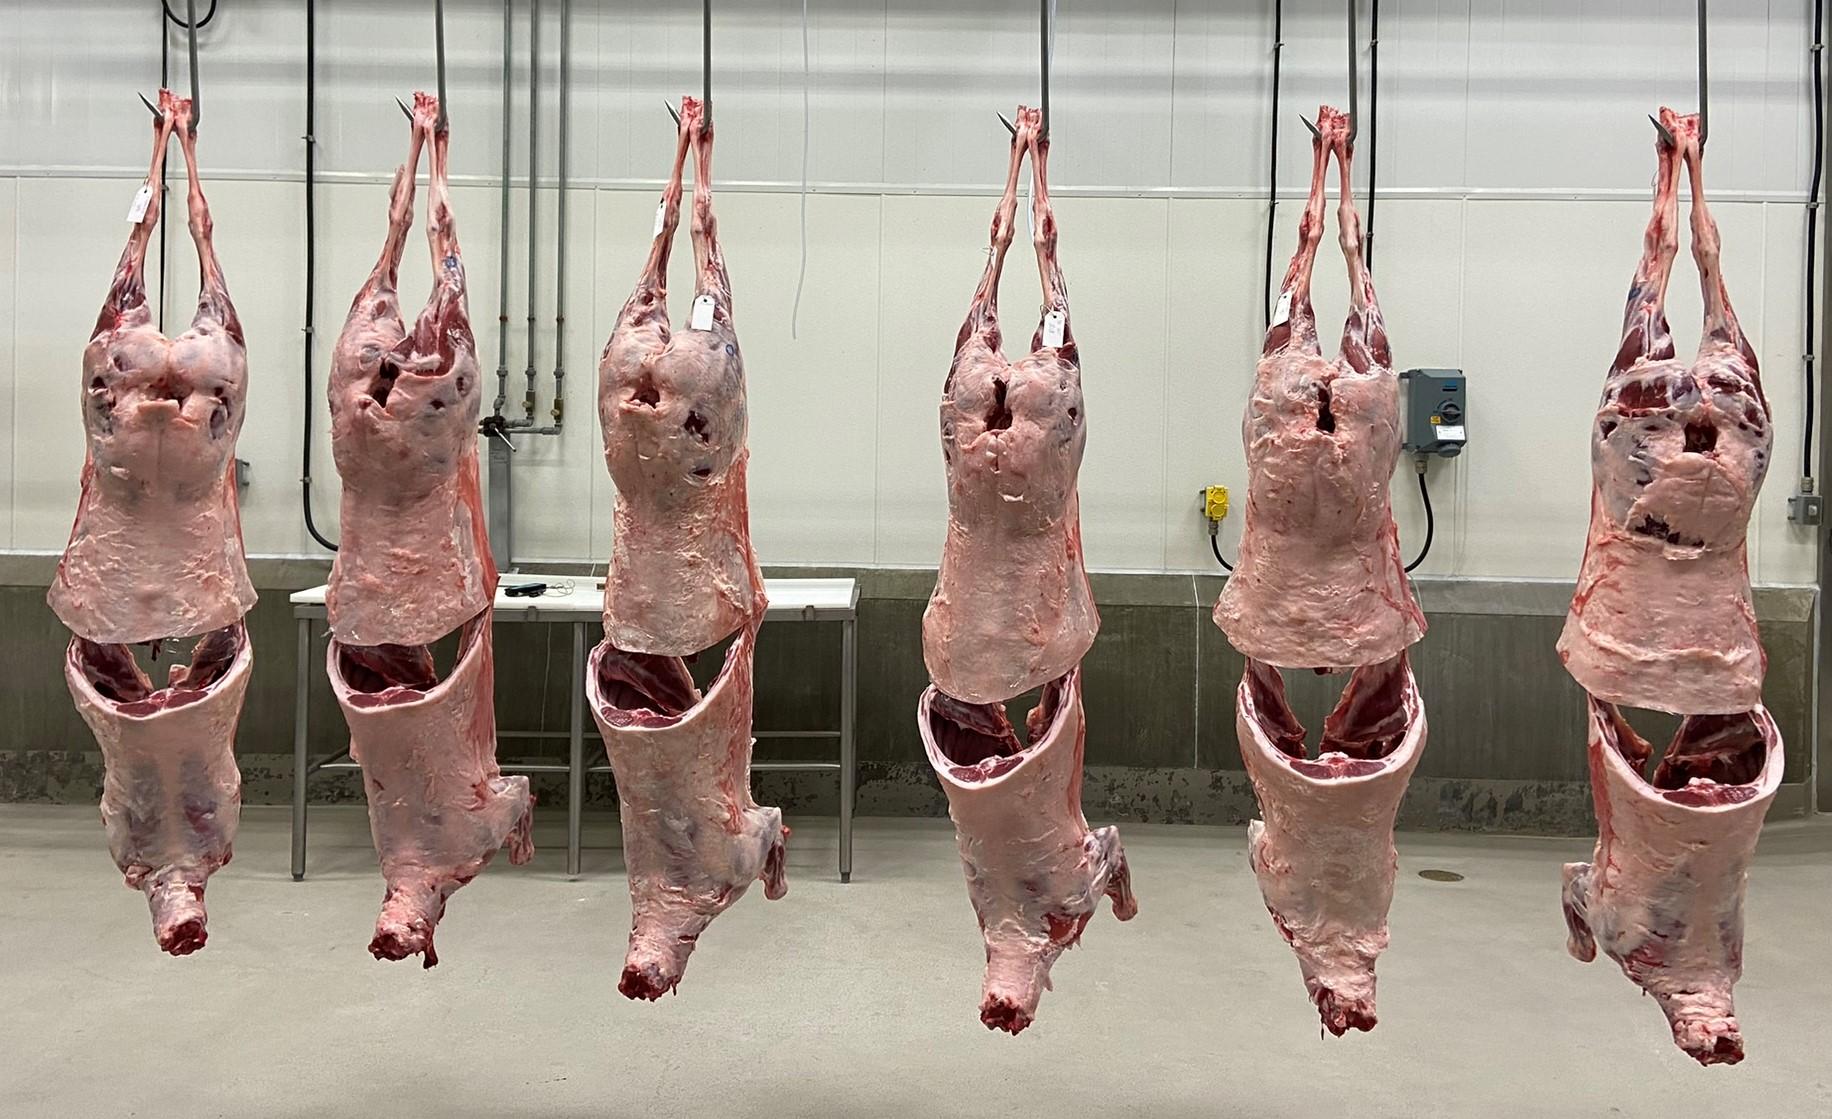 Ribbed lamb carcasses